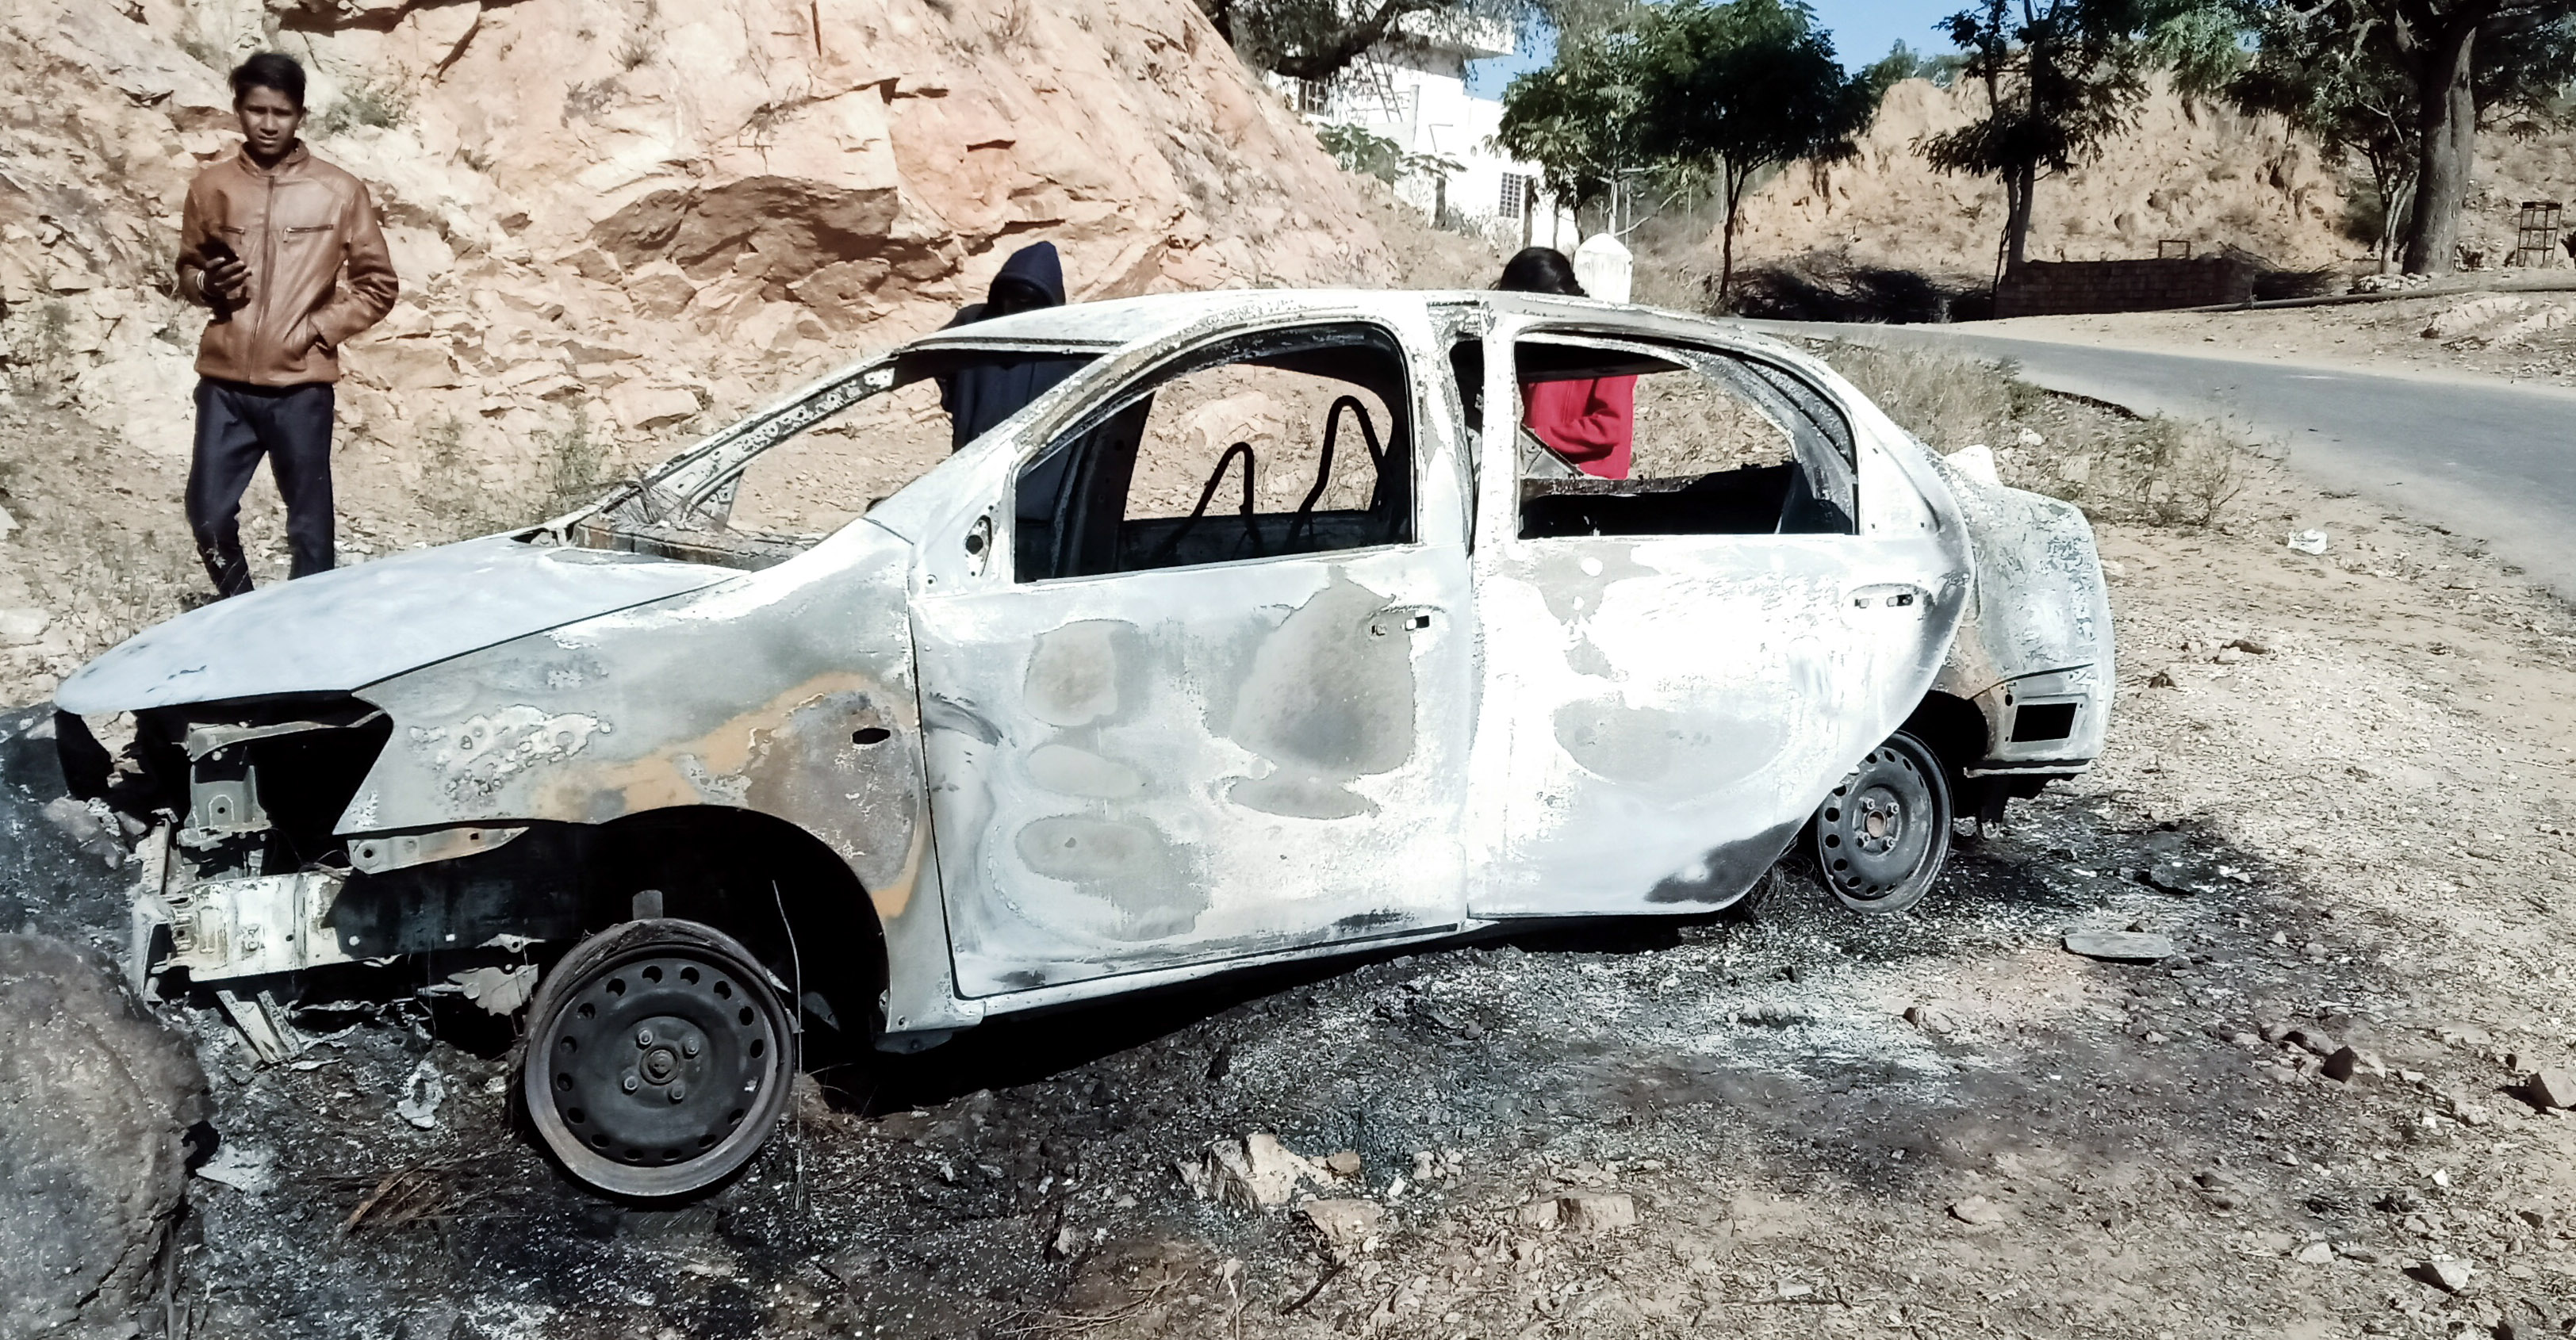 fire in Car: चट्टान से टकराने बाद कार में लगी आग